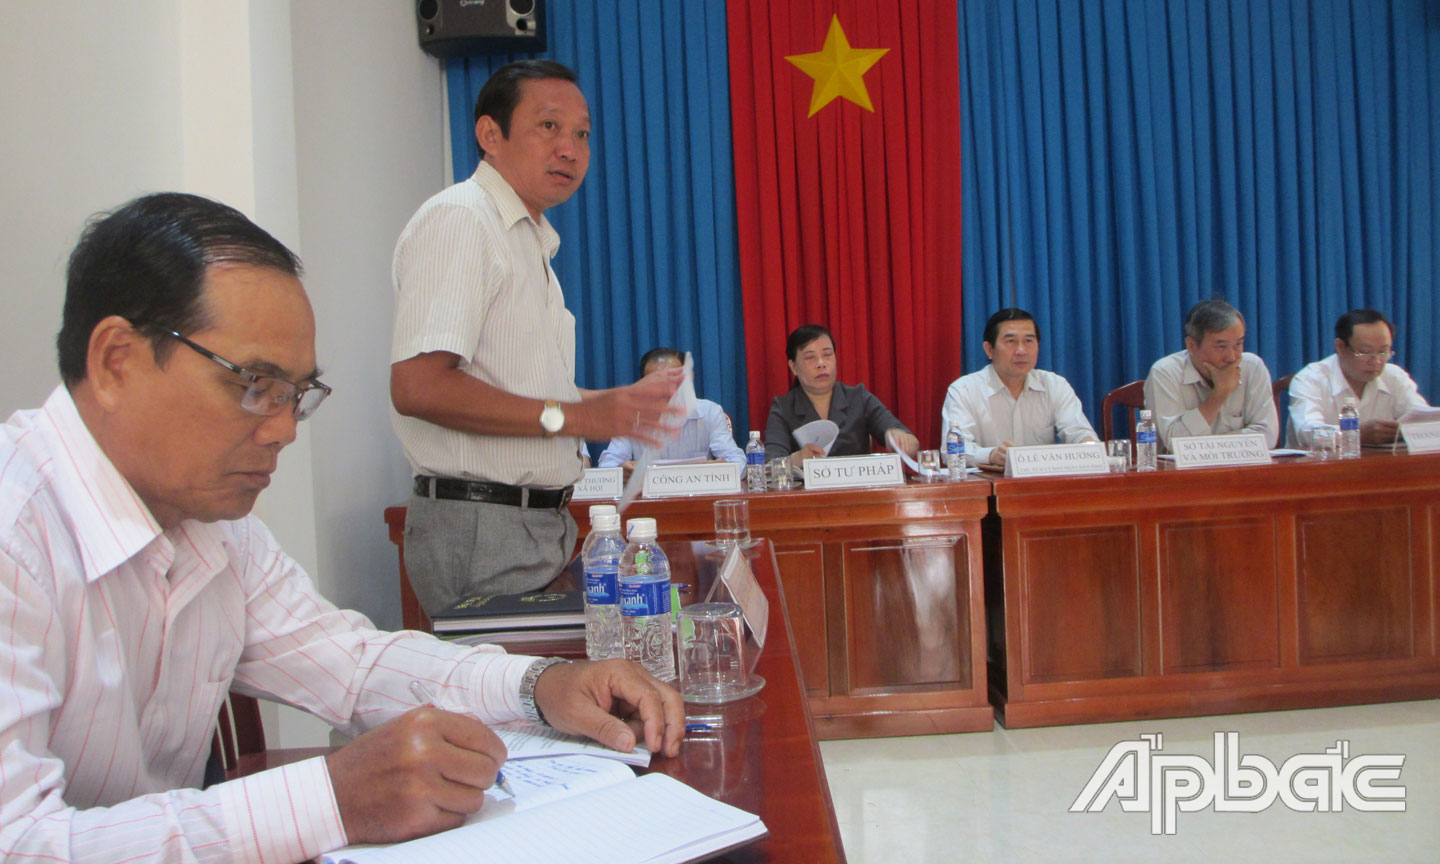 Đồng chí Nguyễn Quốc Thanh báo cáo kết quả thẩm tra và giải quyết  khiếu nại của bà Lang.